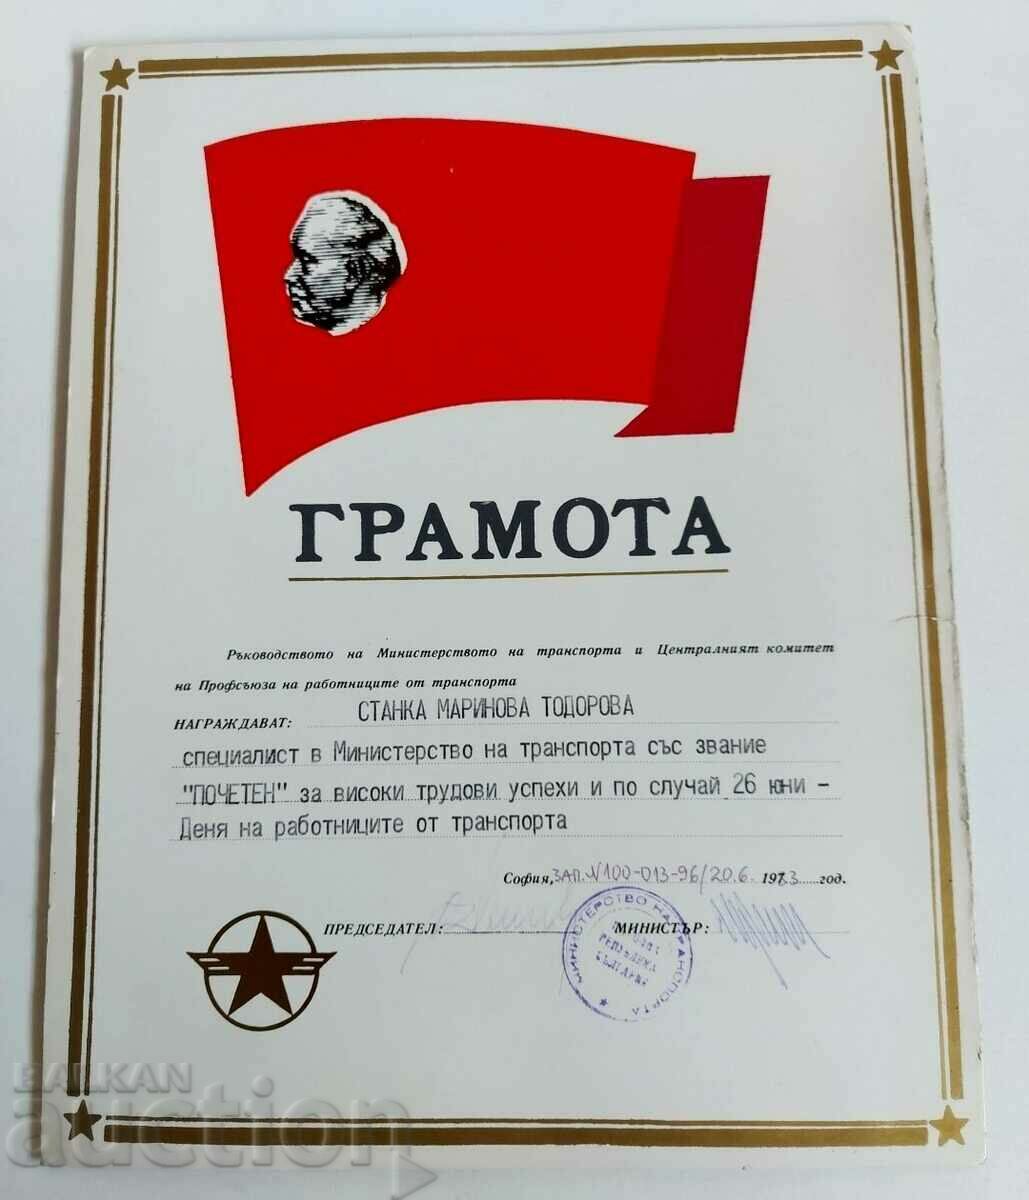 1983 ГРАМОТА СОЦА МИНИСТЕРСТВО НА ТРАНСПОРТА БКП